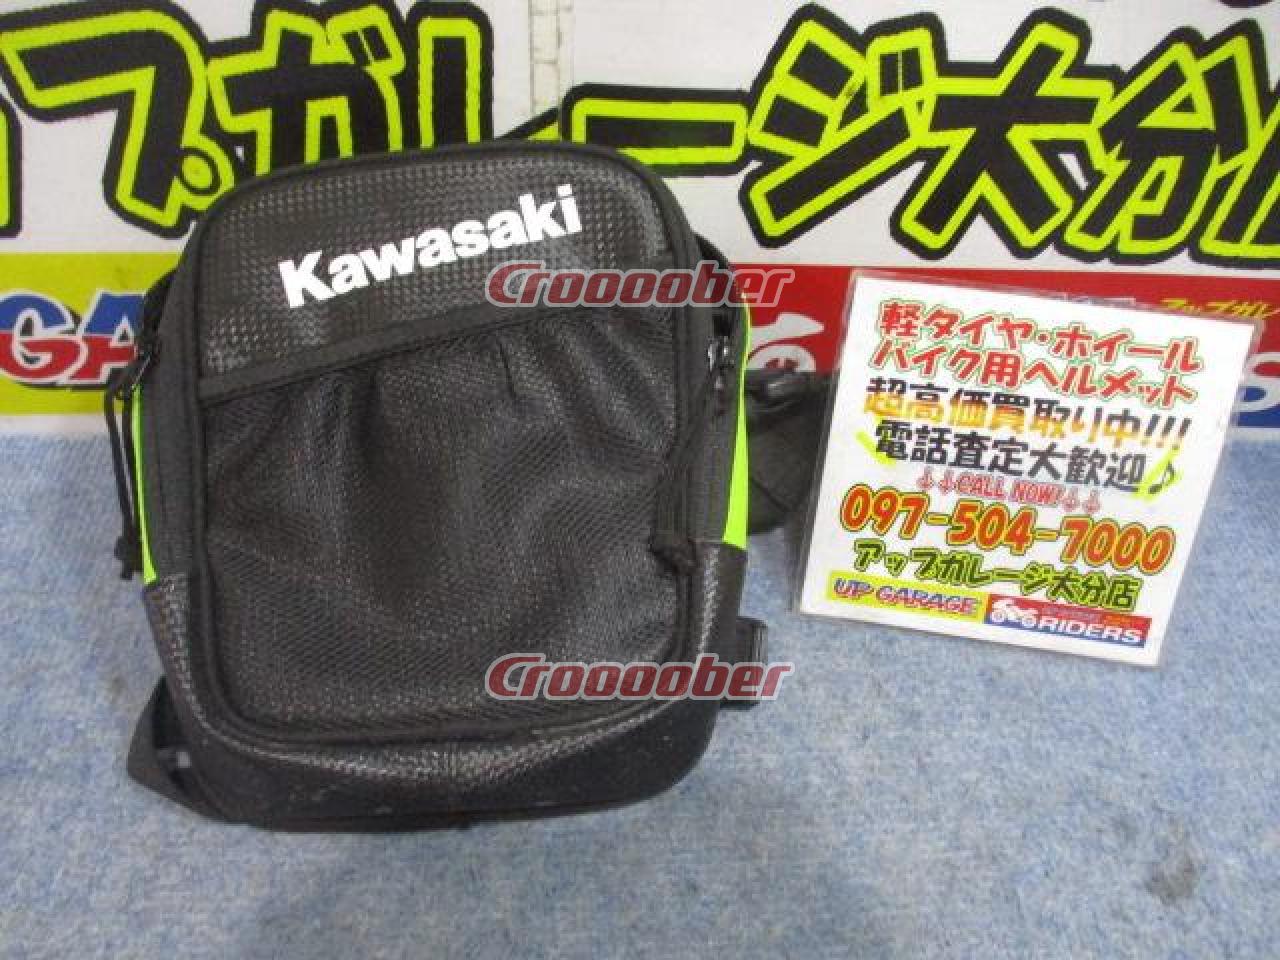 KAWASAKI(カワサキ) レッグポーチ | ツーリング用品 バッグ(二輪